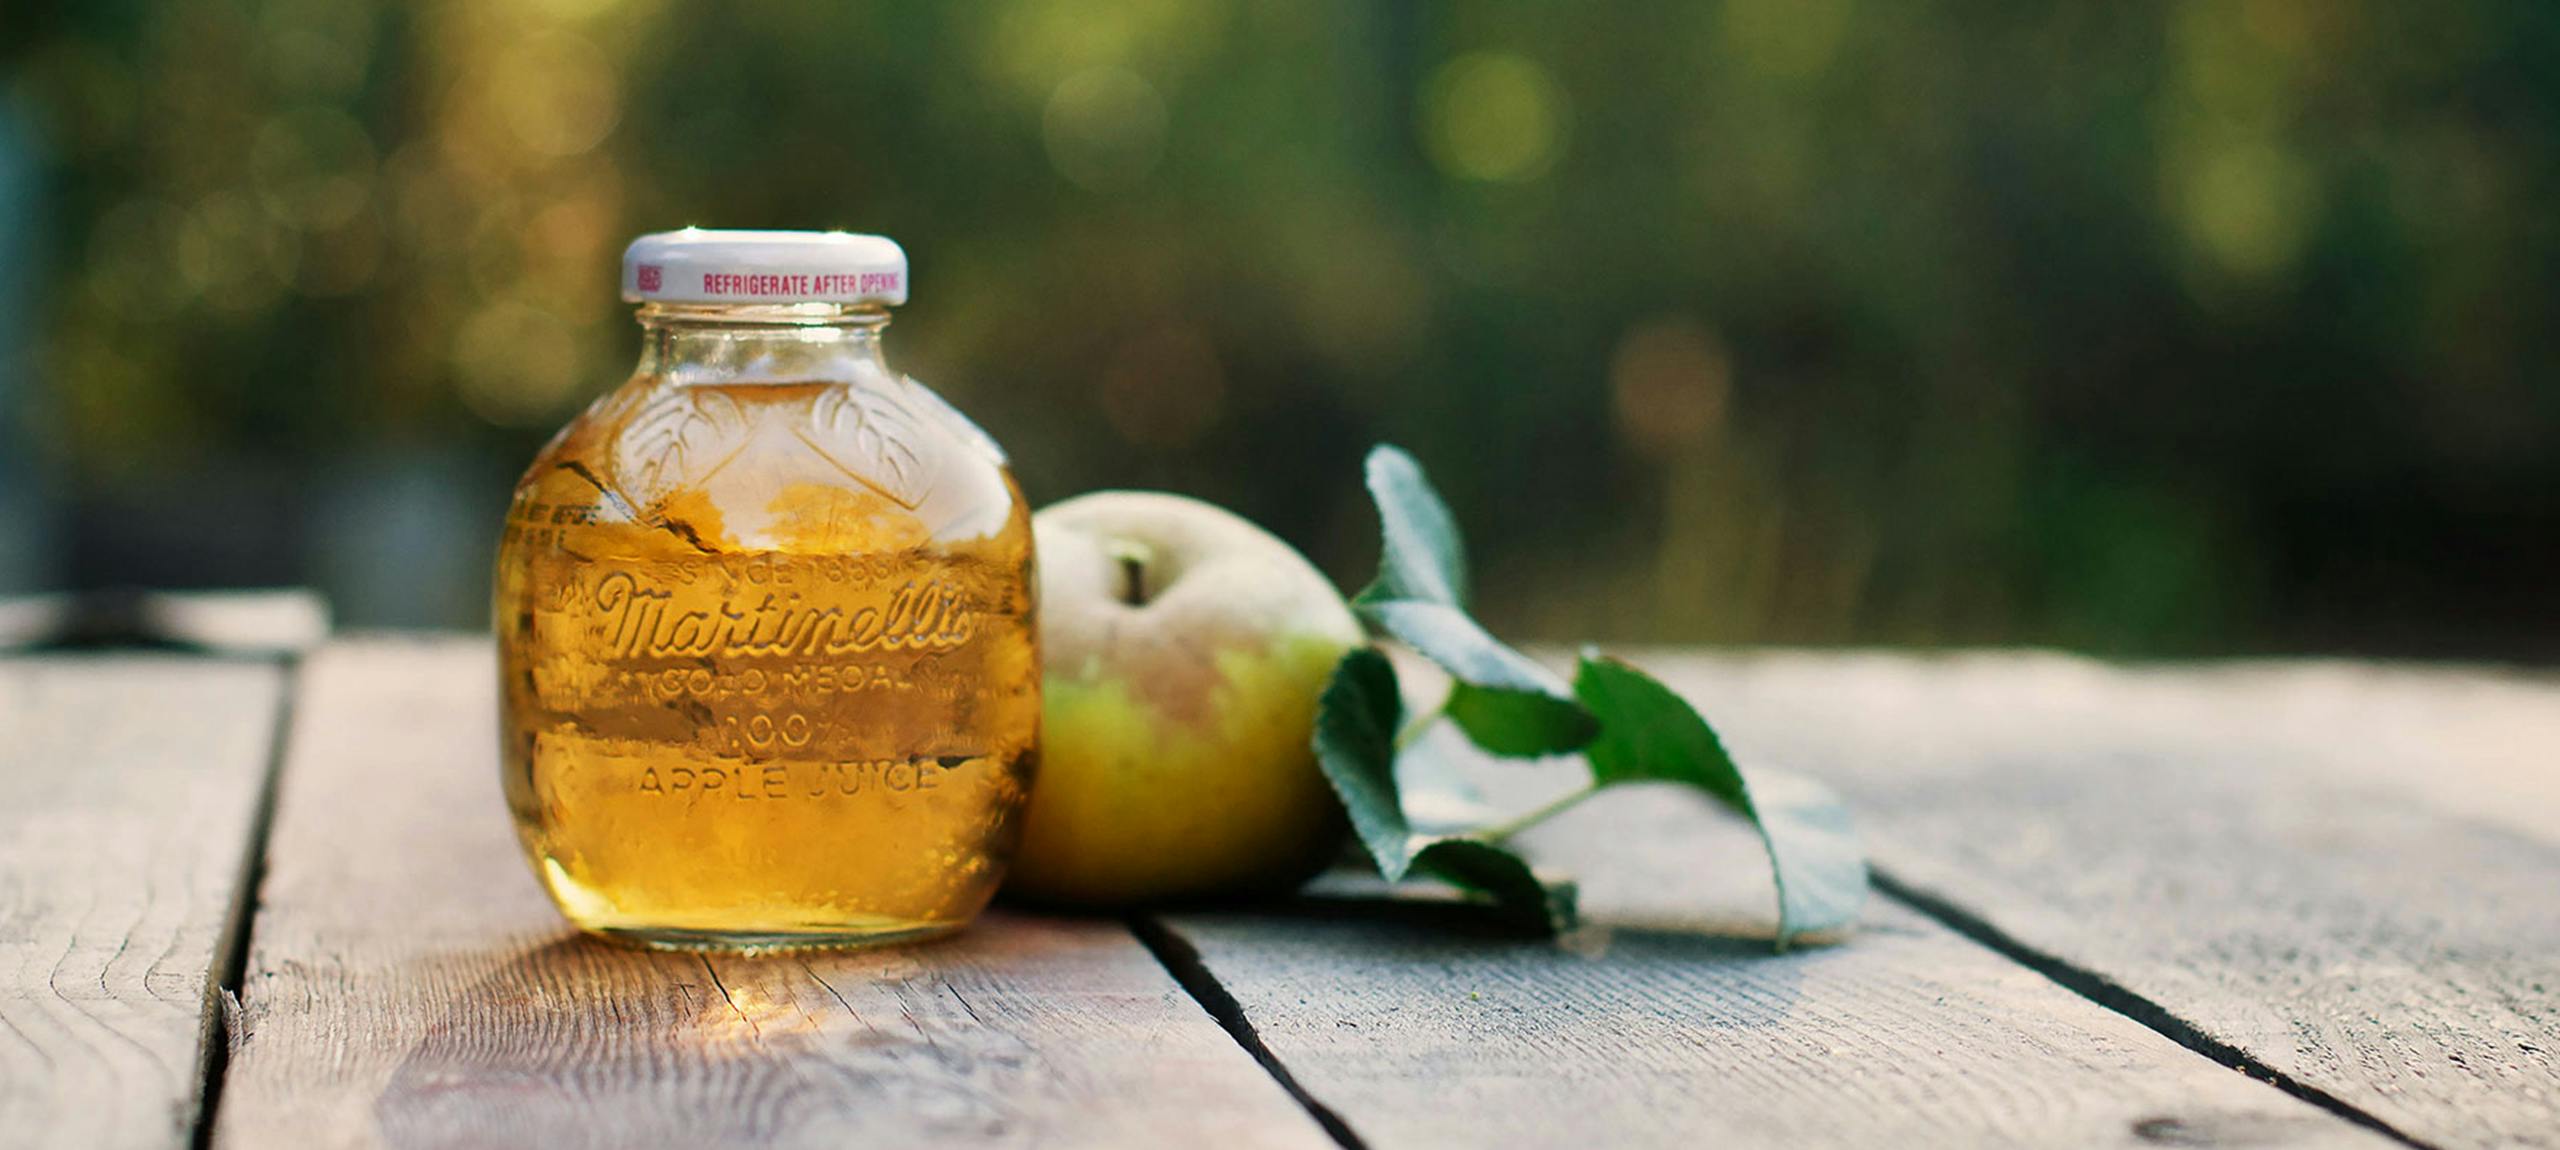 عصير تفاح «مارتينيلي» قد يصيبك بسرطان: مليء بزرنيخ والشركة سحبته